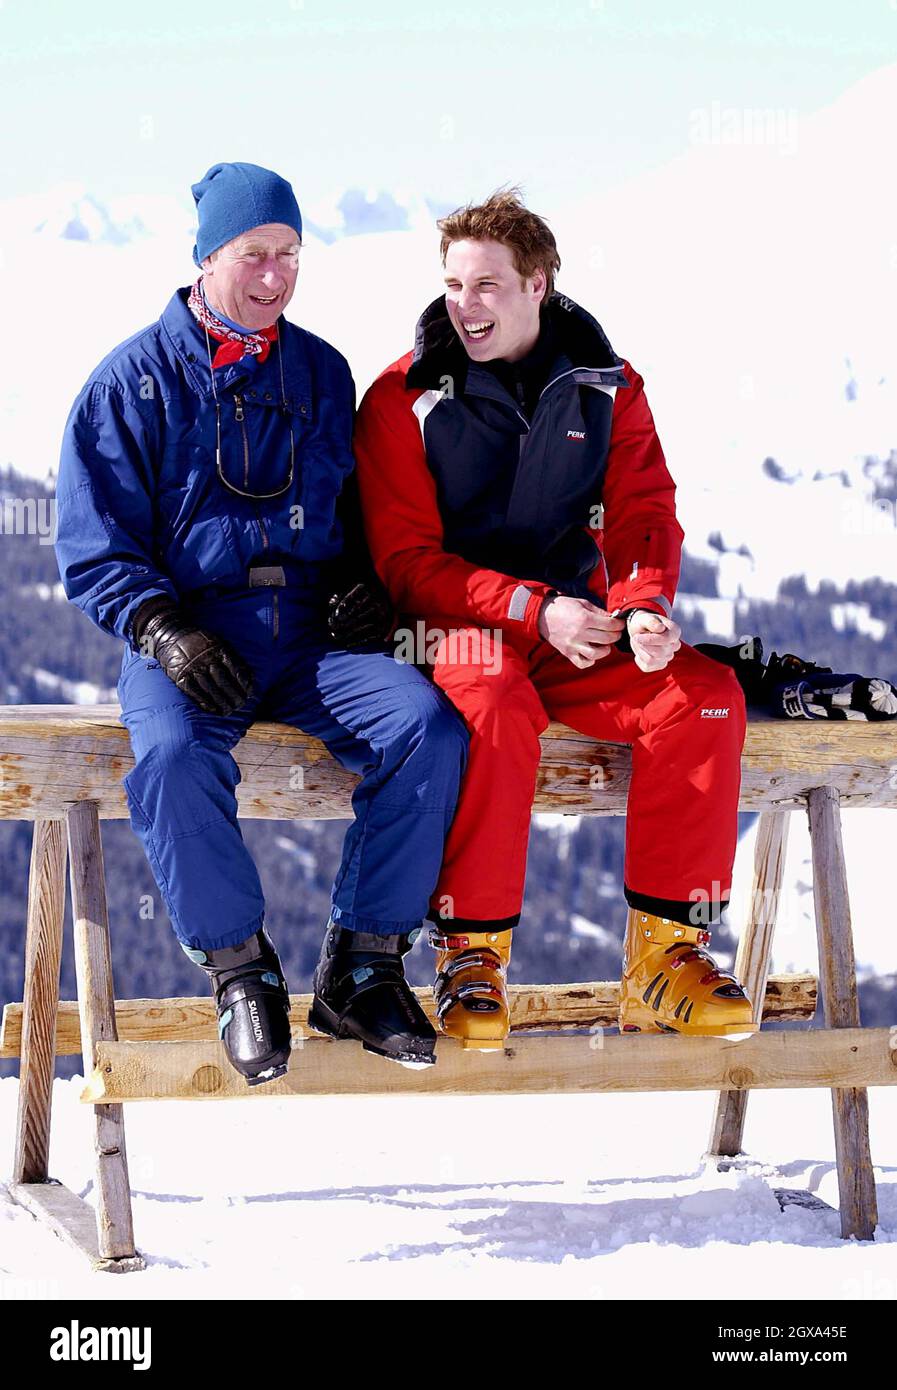 Le Prince Charles et son fils, le Prince William, appréciant leur voyage de ski ensemble.Le prince William plaisantait avec les membres de la presse à la façon dont son père est un skieur supérieur, mais qu'il rattrapa. Banque D'Images